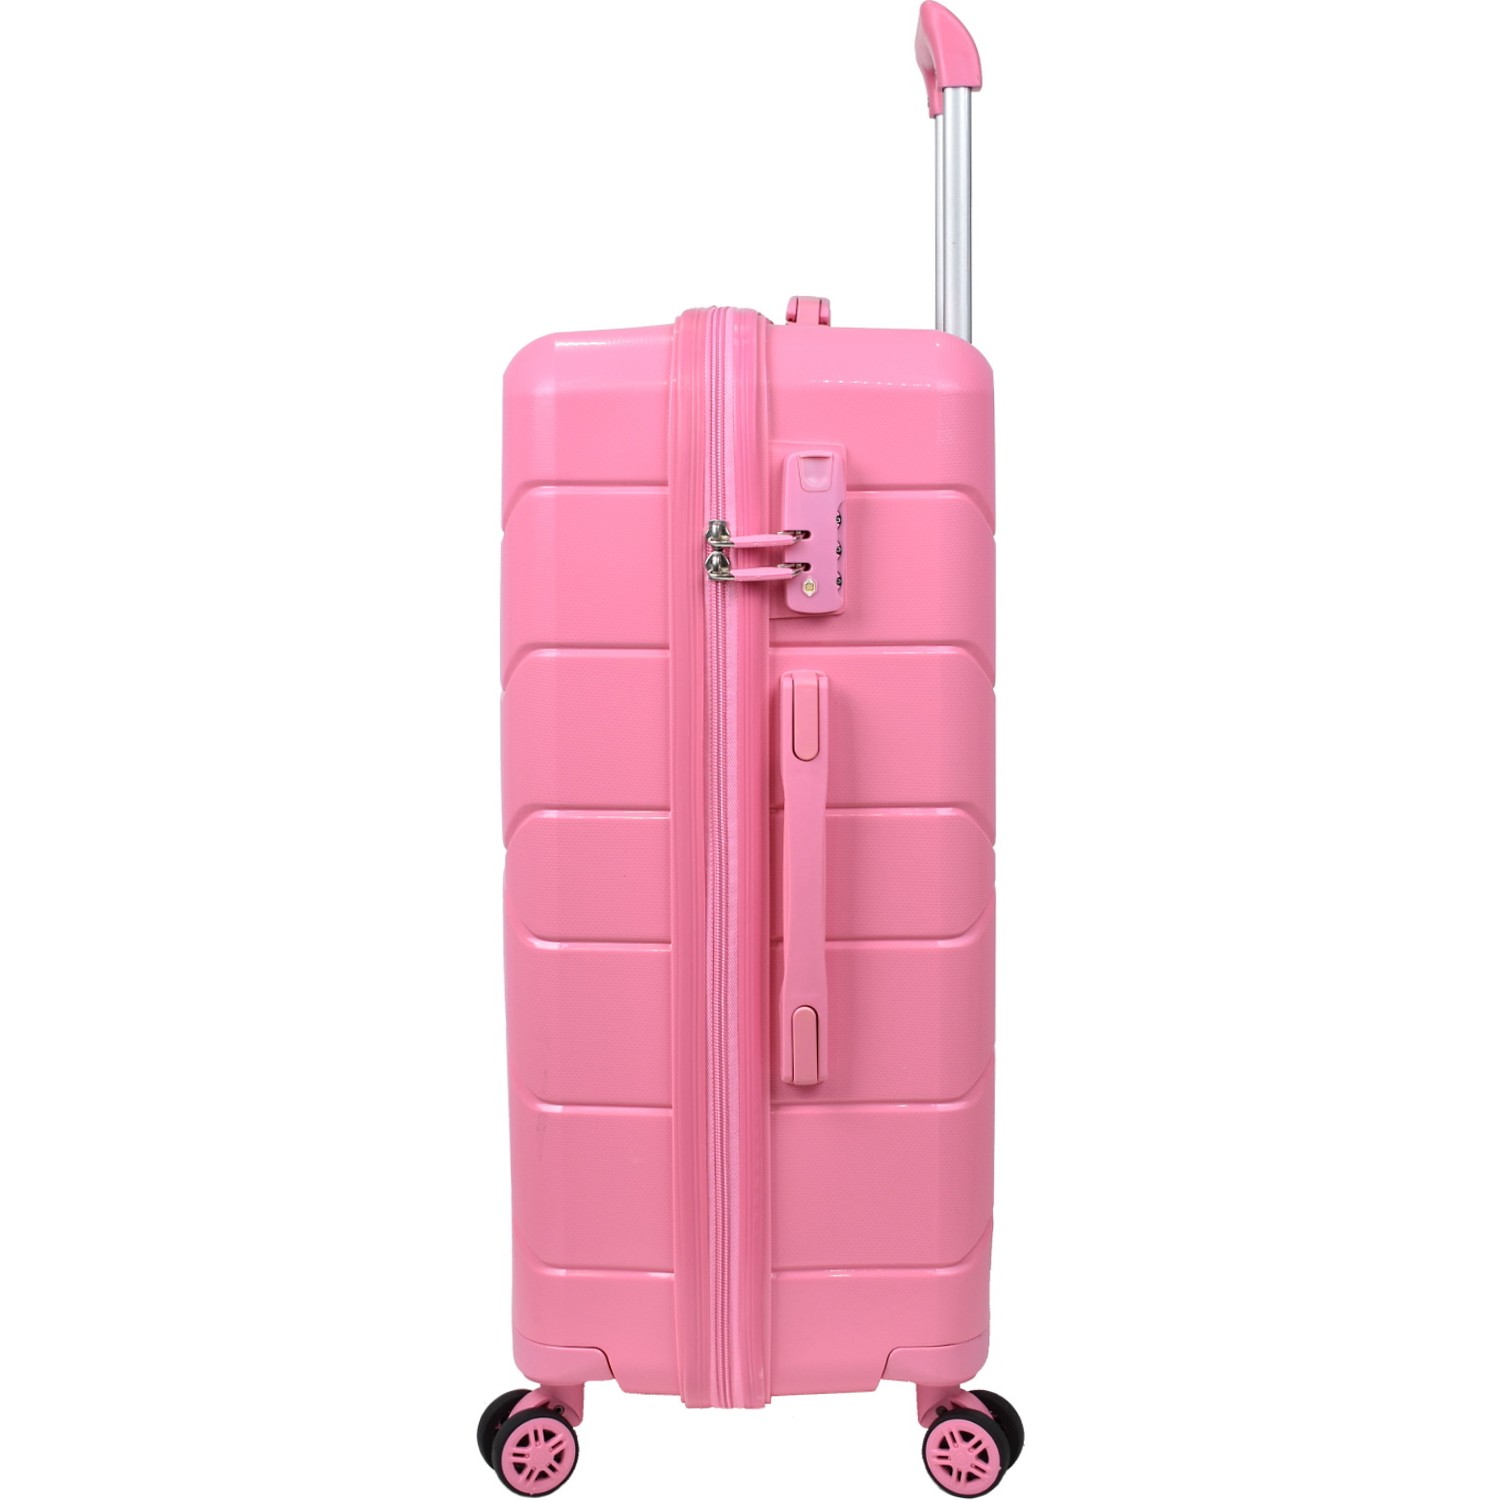 Большой чемодан из полипропилена MCS V366 L PINK! Для 23 кг! - 4